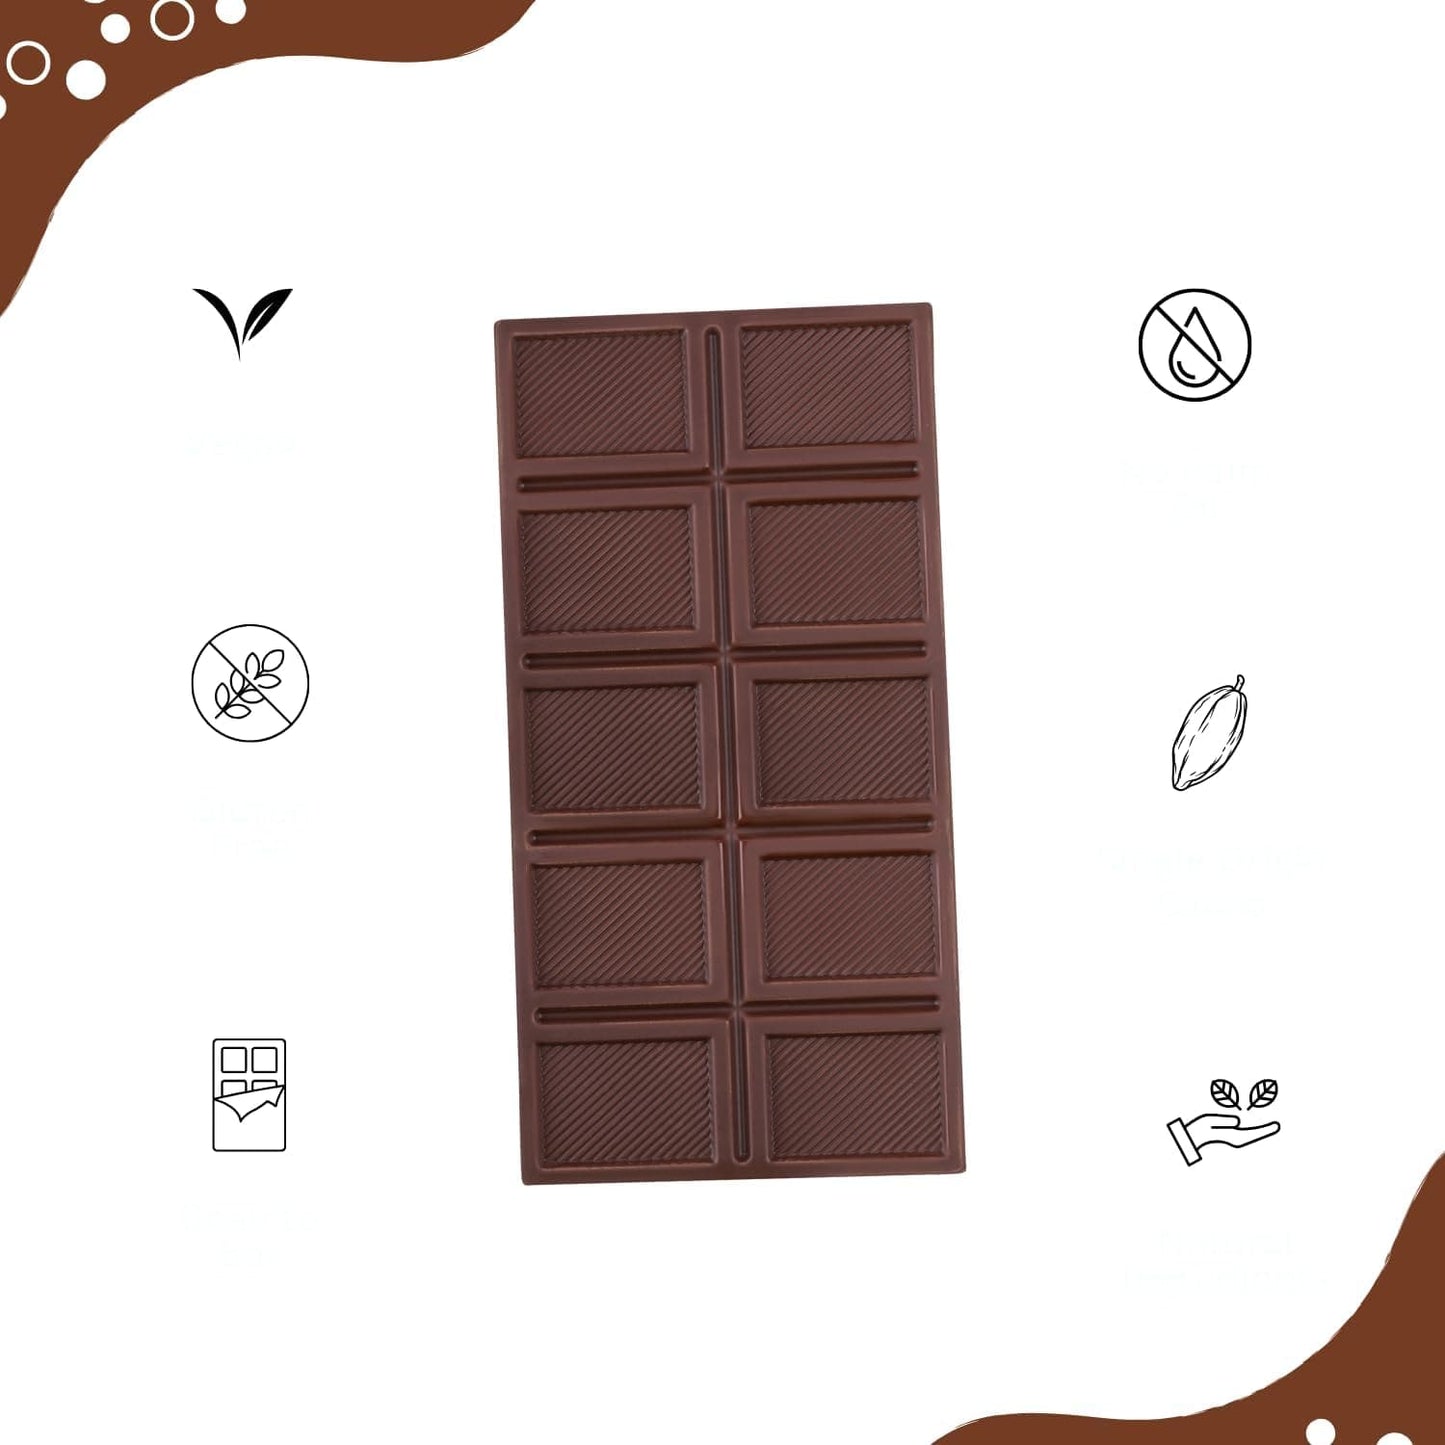 Darkins Vegan Mylk Fruit & Nuts Chocolate | Unrefined Cane Sugar | 50 Gm Each Pack Of 3